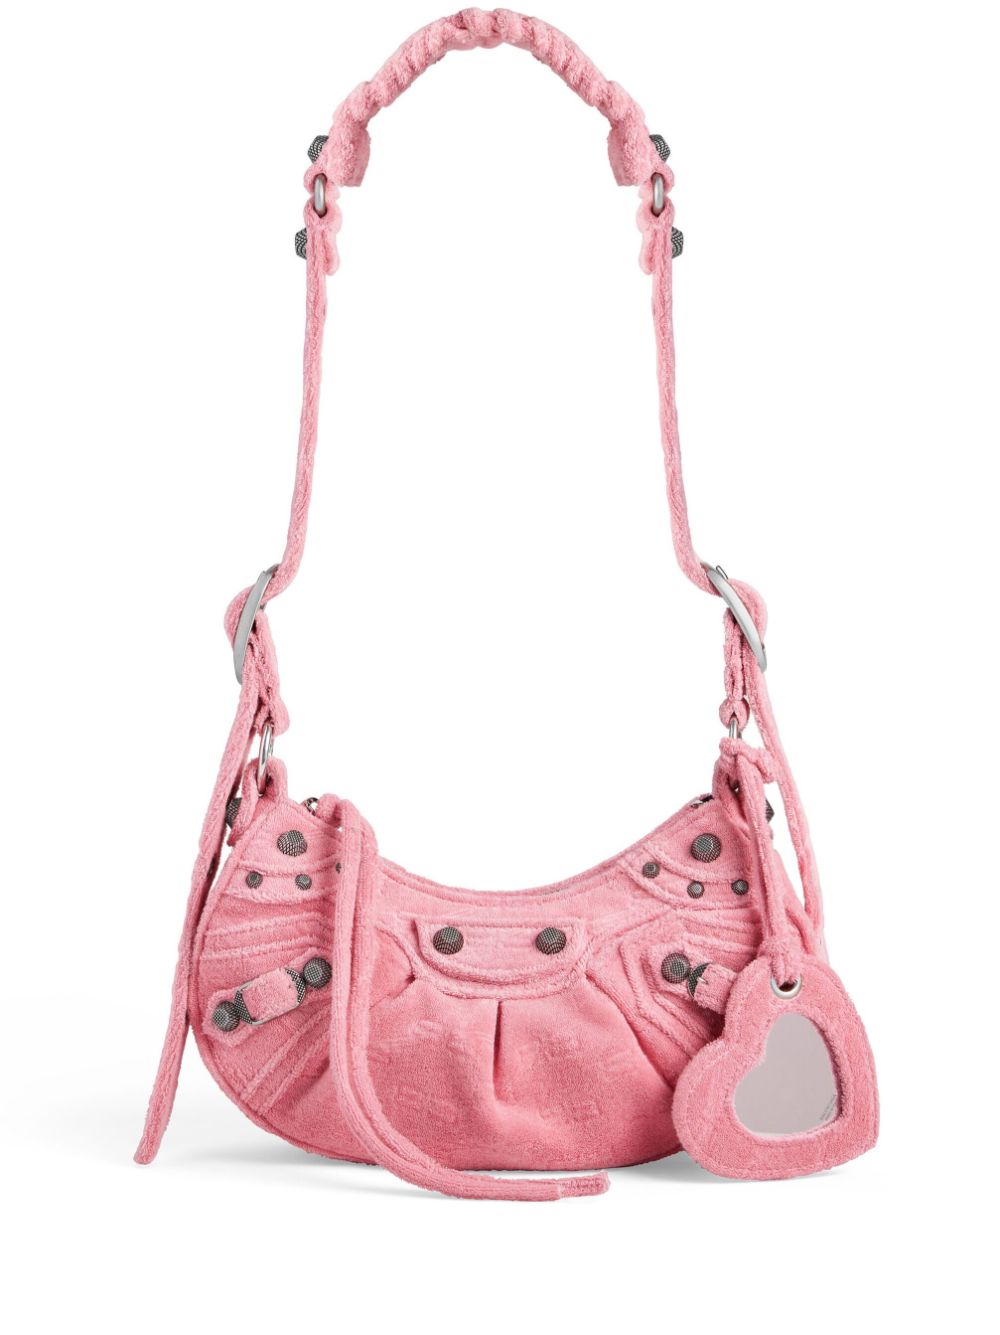 Túi vai nhỏ Flamingo hồng với chi tiết trang trí